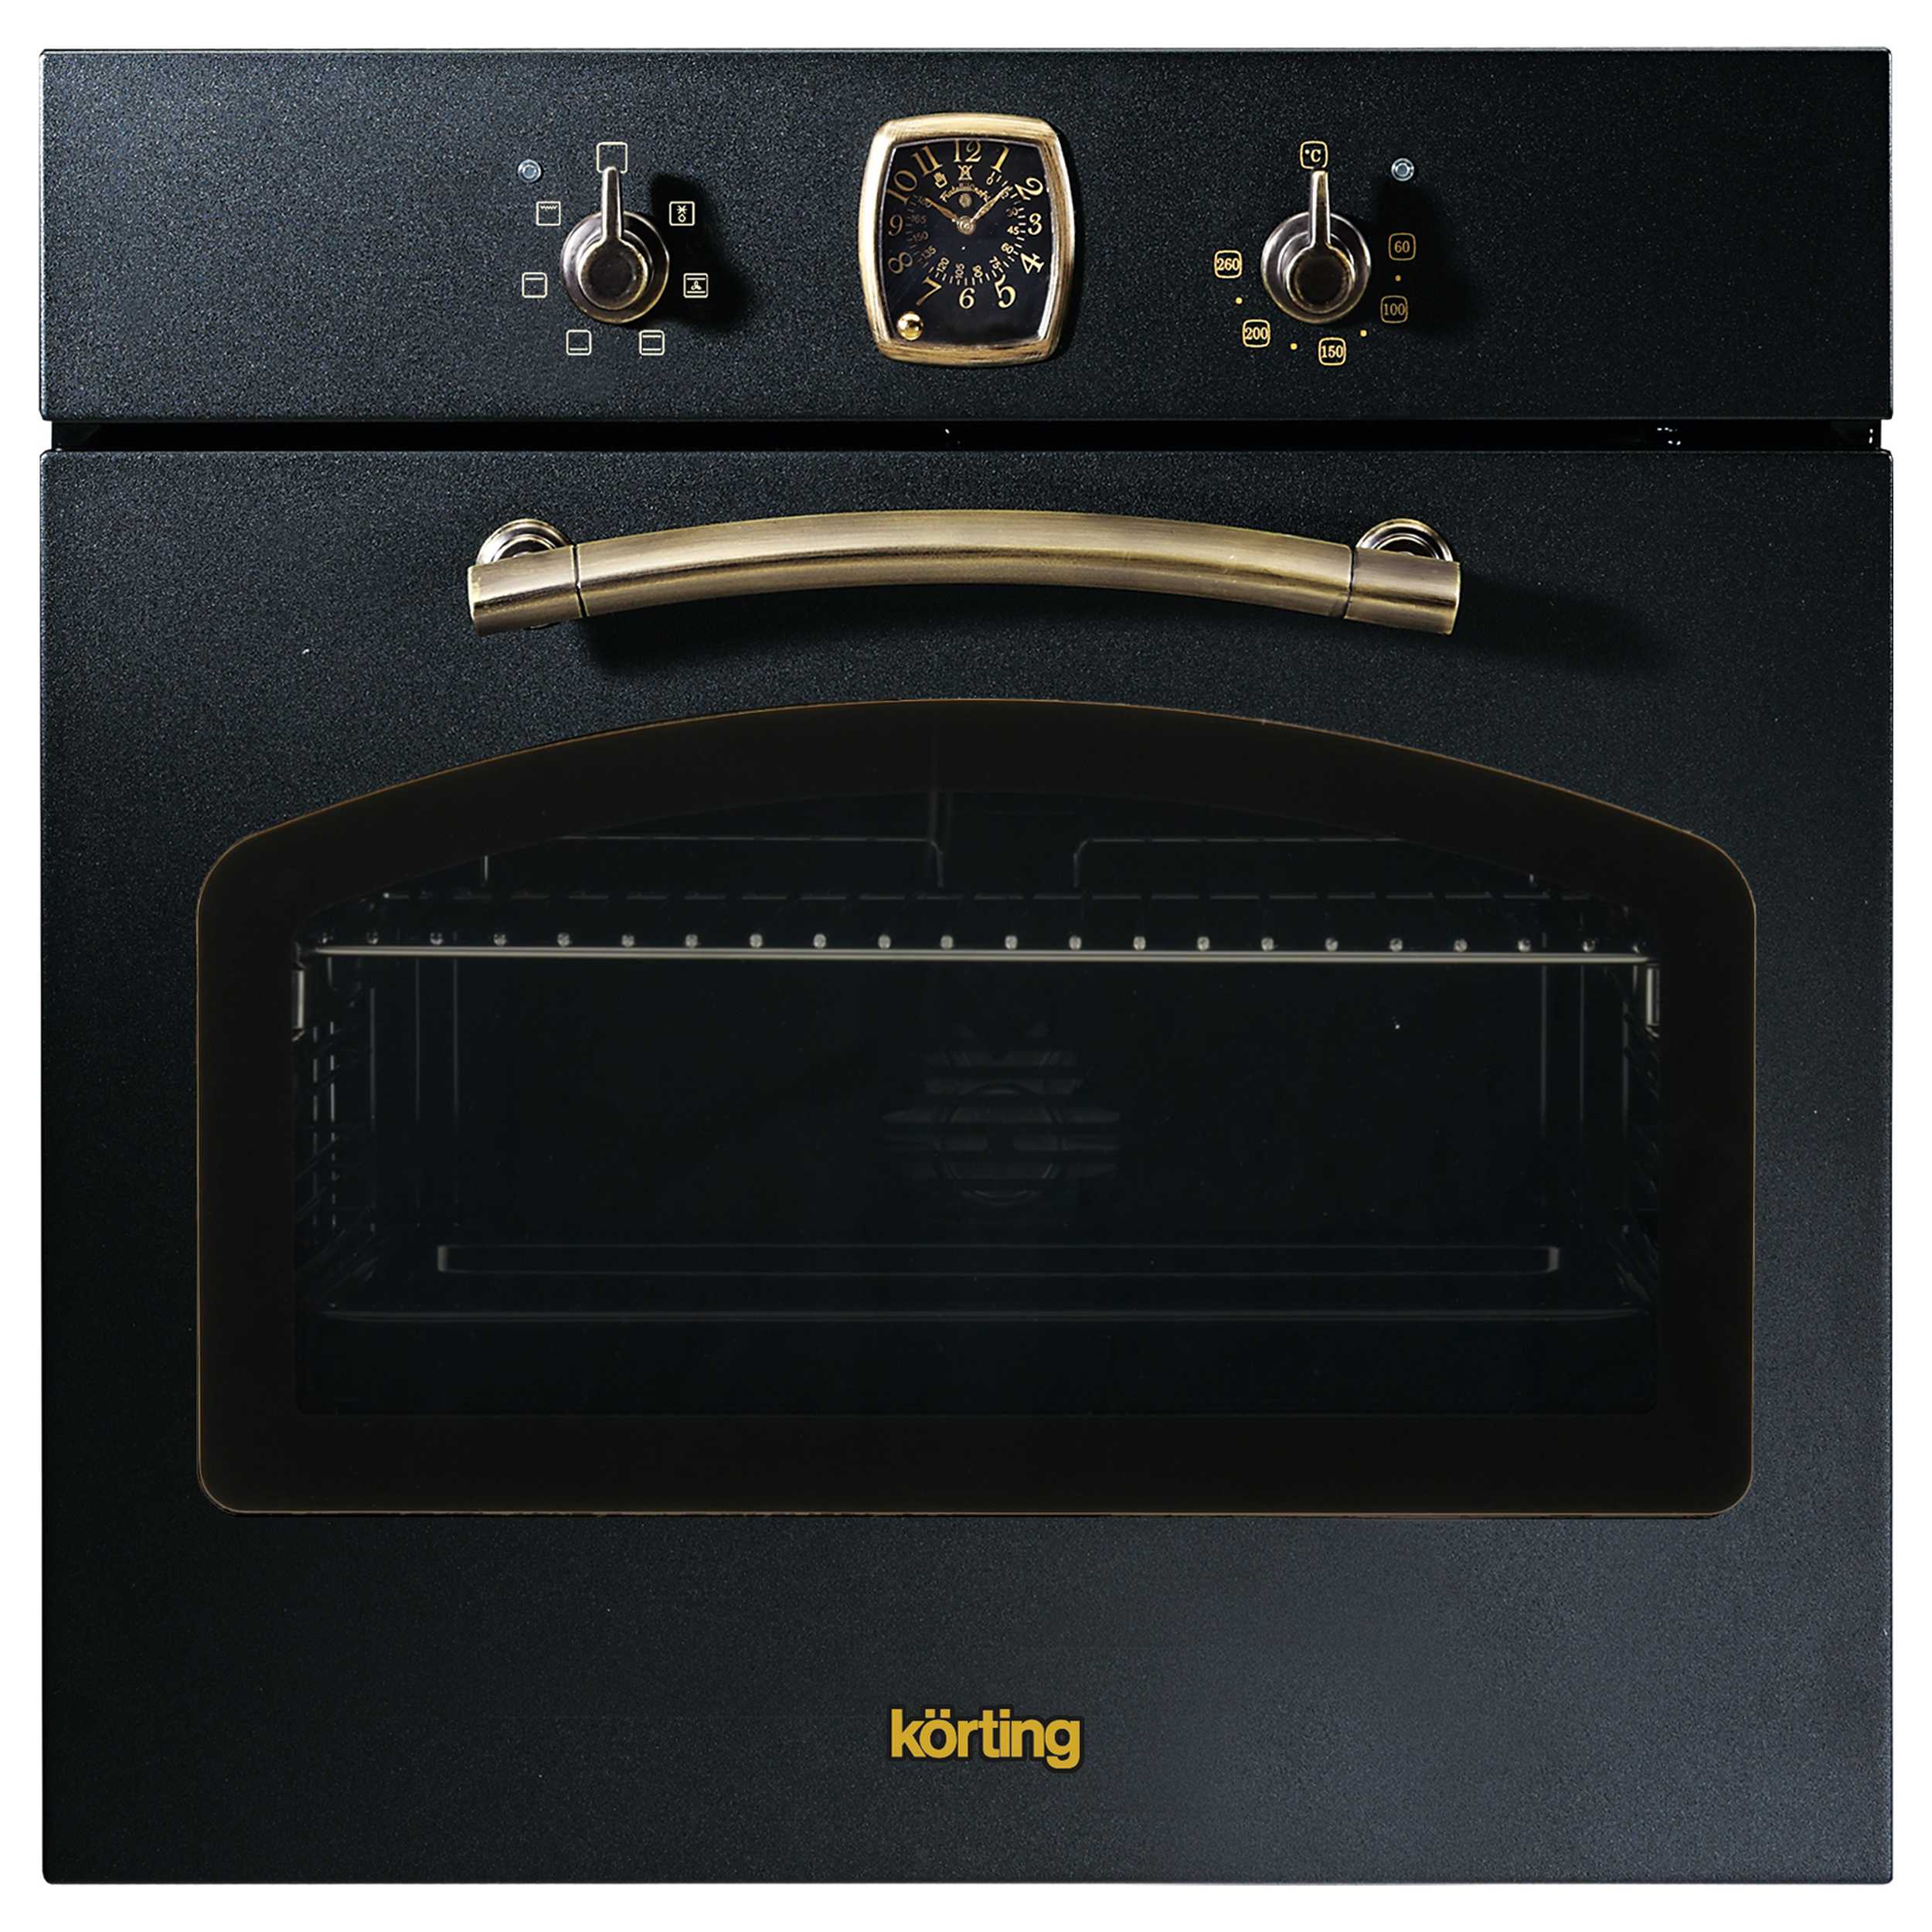 Встраиваемый электрический духовой шкаф Korting OKB 460 RN черный, золотистый смарт часы gen 12 золотистый